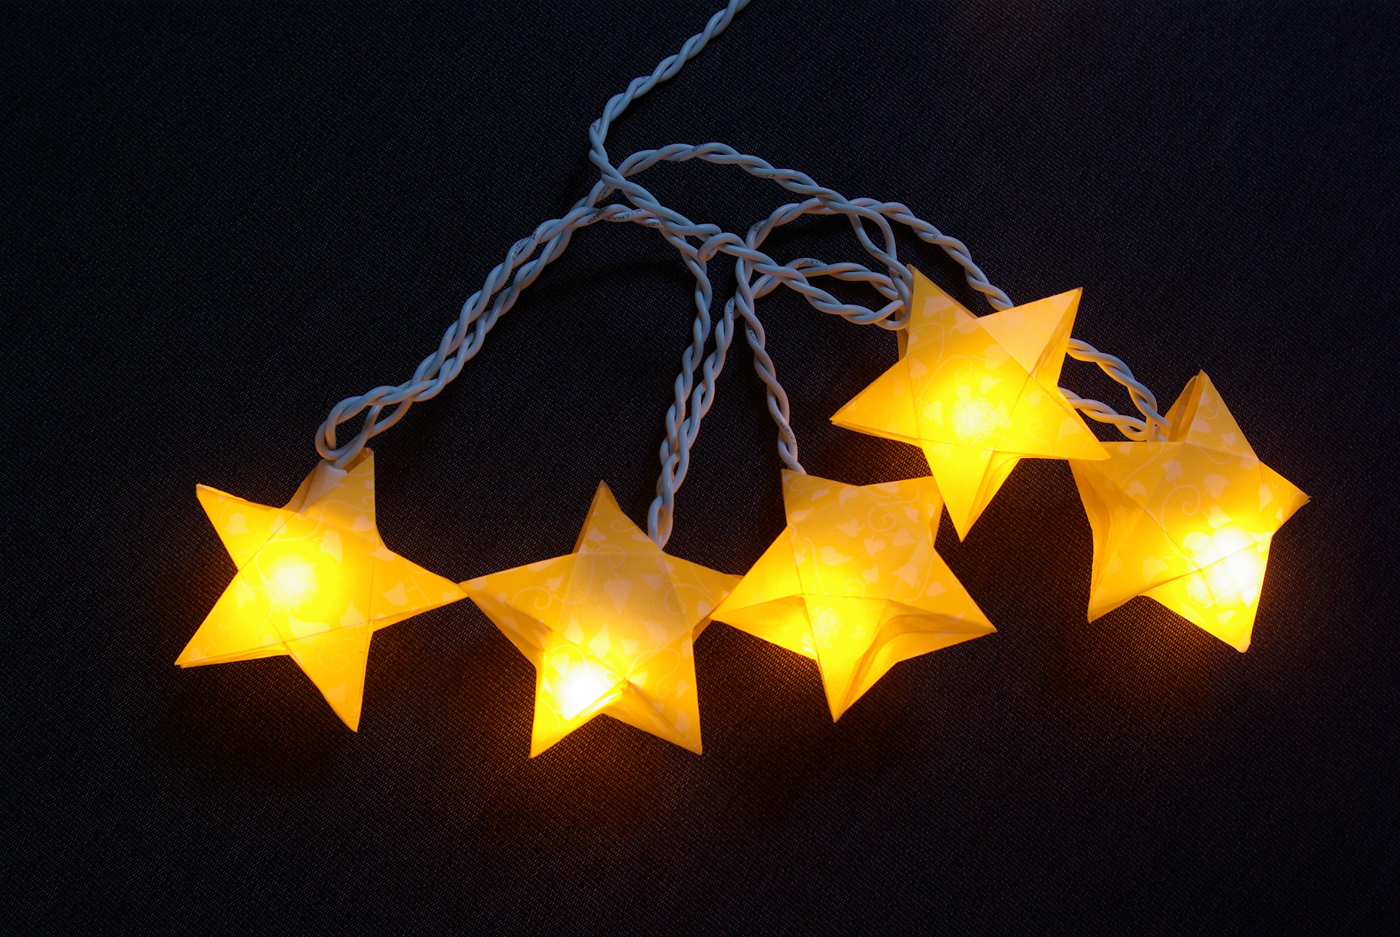 Origami sterne 3d falten faltanleitung lichterkette basteln sterne selber machen anleitung diy kostenlos fertig.jpg